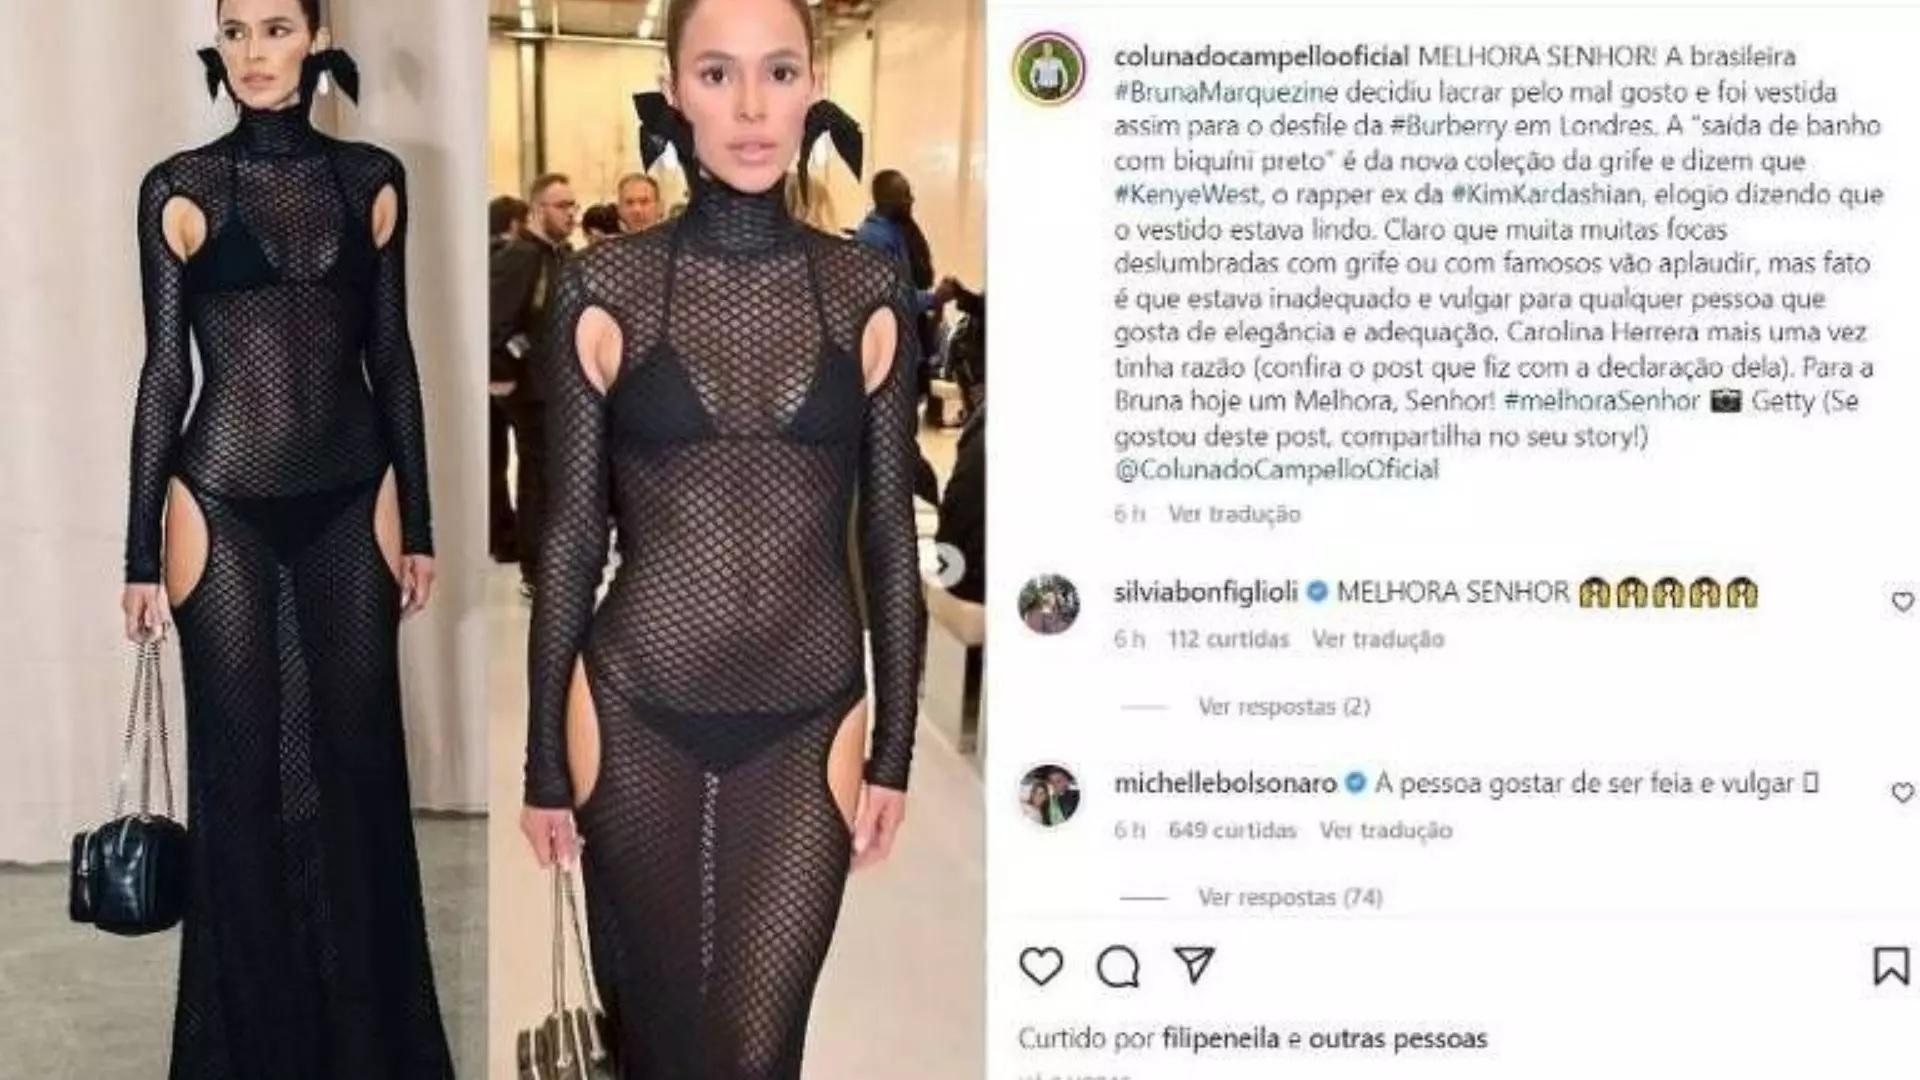 'Gosta de ser feia e vulgar', dispara Michelle Bolsonaro sobre Bruna Marquezine